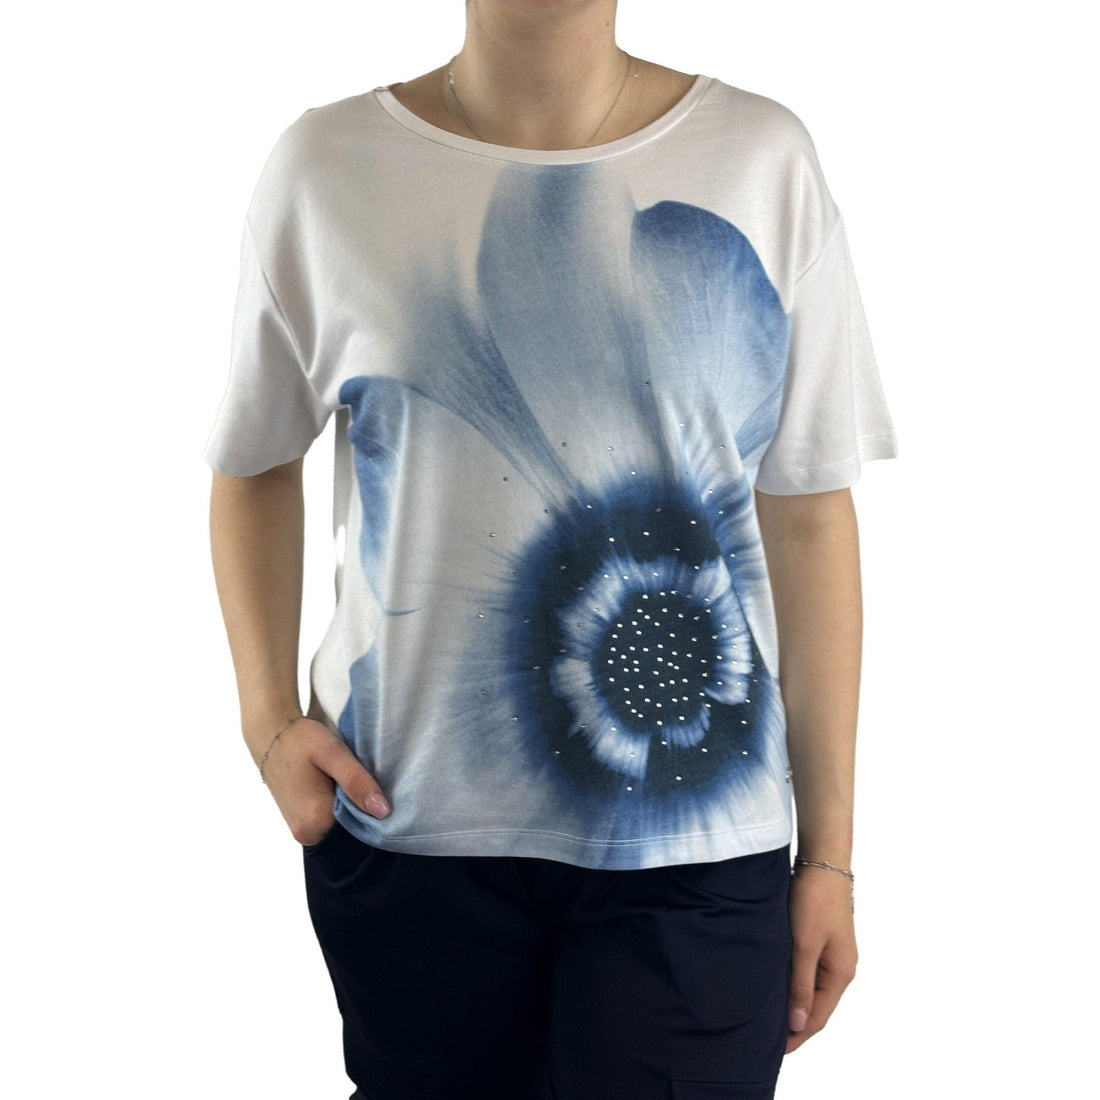 Shirt mit floralen Print. Mode von Monari